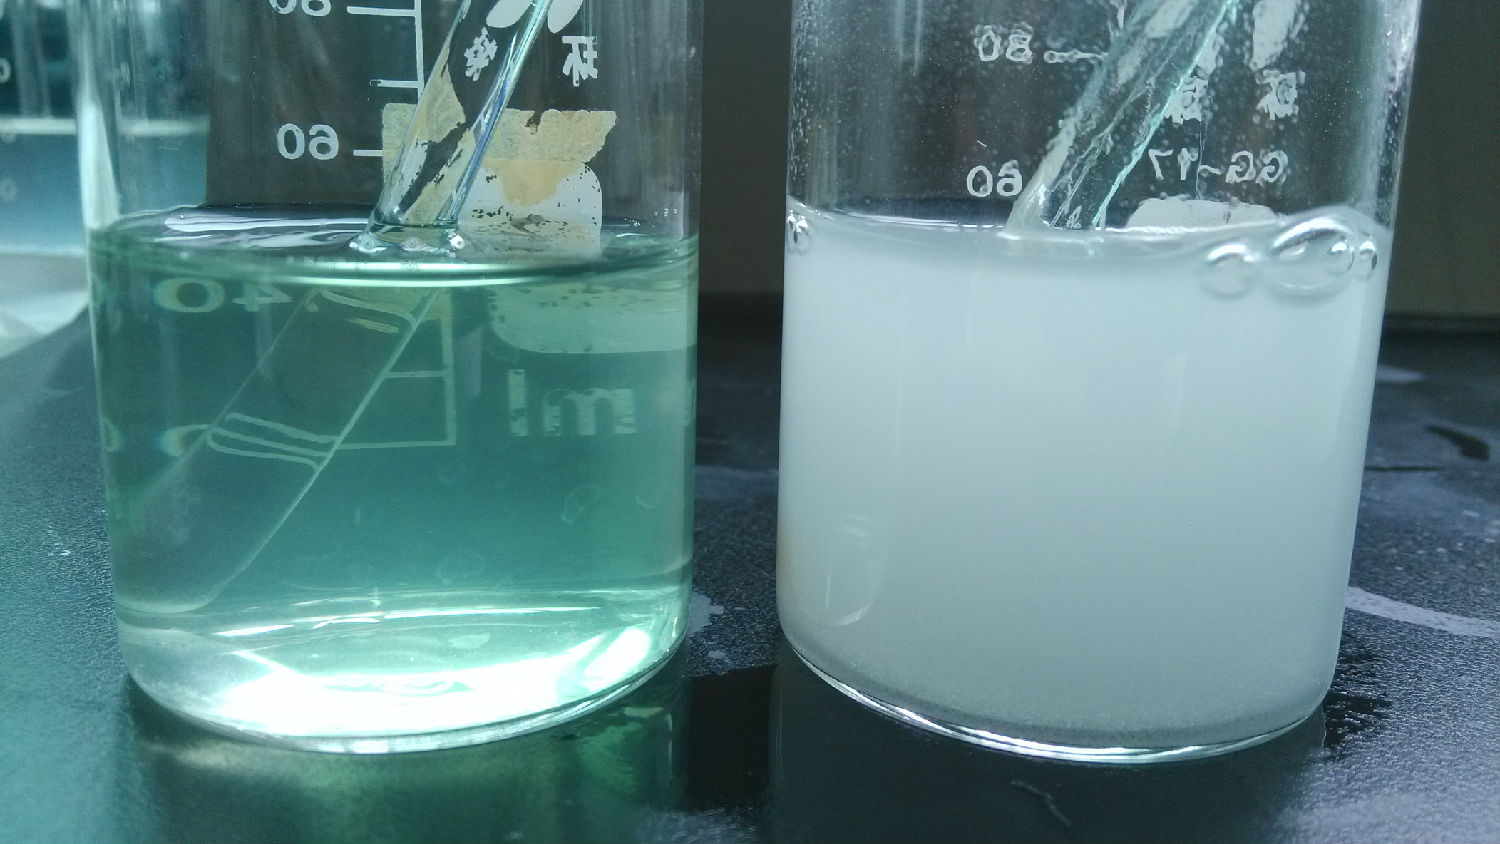 微补冲力镁与复合肥溶液混用照片 硫酸锌与复合肥溶液混配沉淀照片.jpg